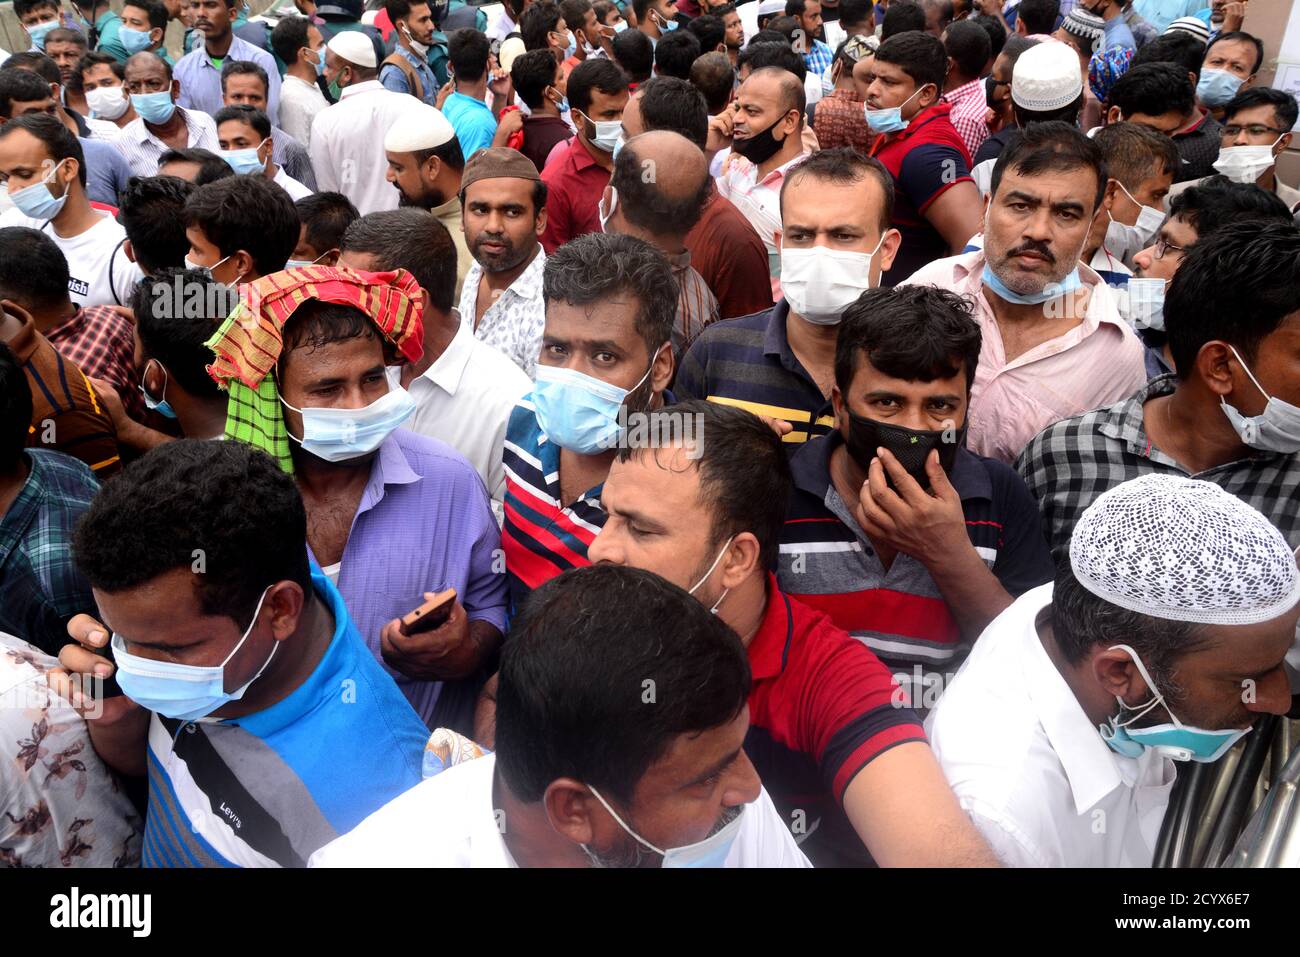 Lavoratori migranti che lavorano in Arabia Saudita dimostrazione di fronte all'ufficio Saudi Arabian Airlines chiedendo biglietti per tornare al loro posto di lavoro, dentro Foto Stock